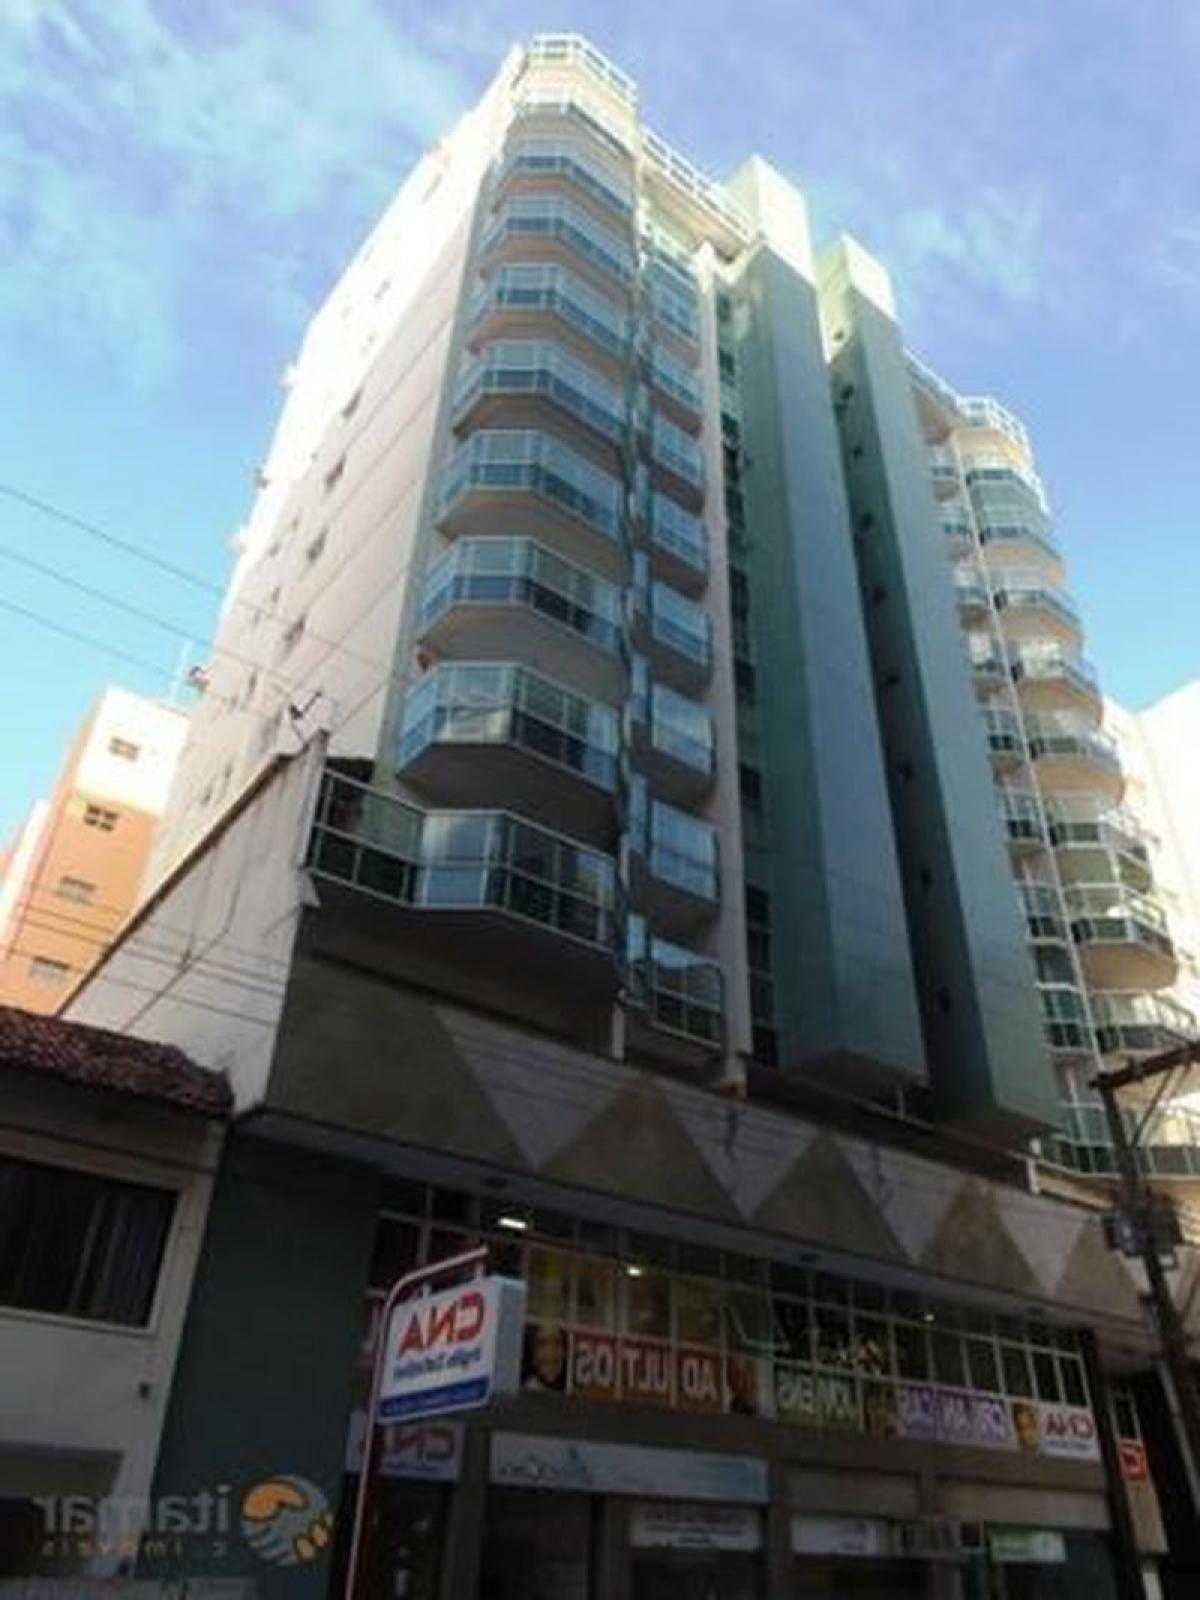 Picture of Apartment For Sale in Guarapari, Espirito Santo, Brazil